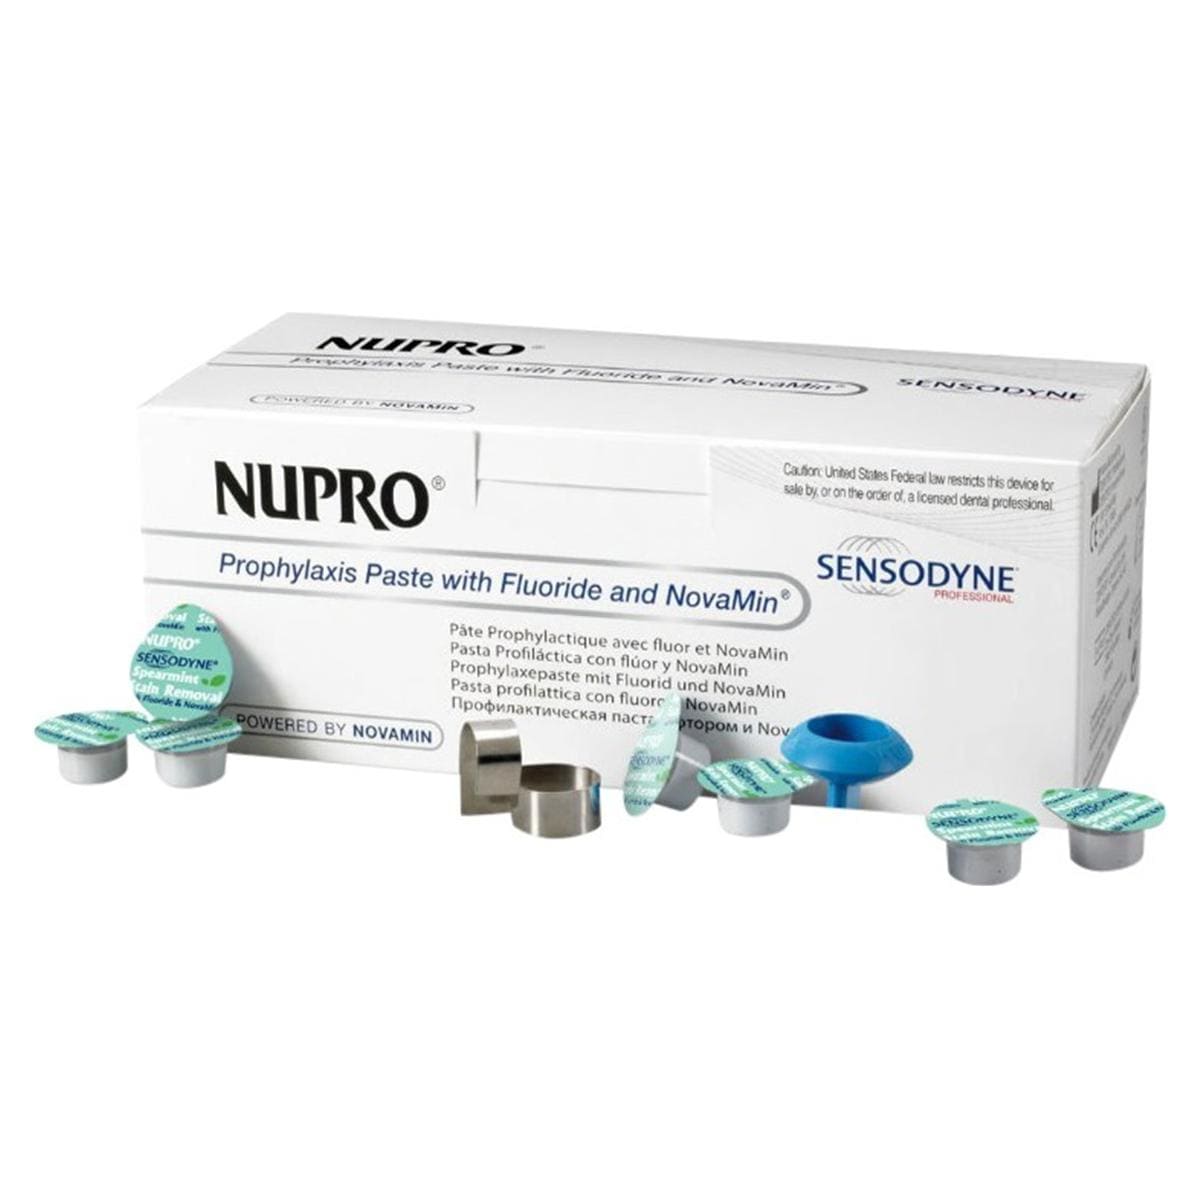 Nupro Sensodyne Prophylaxis paste single dose met fluoride - Orange, removal